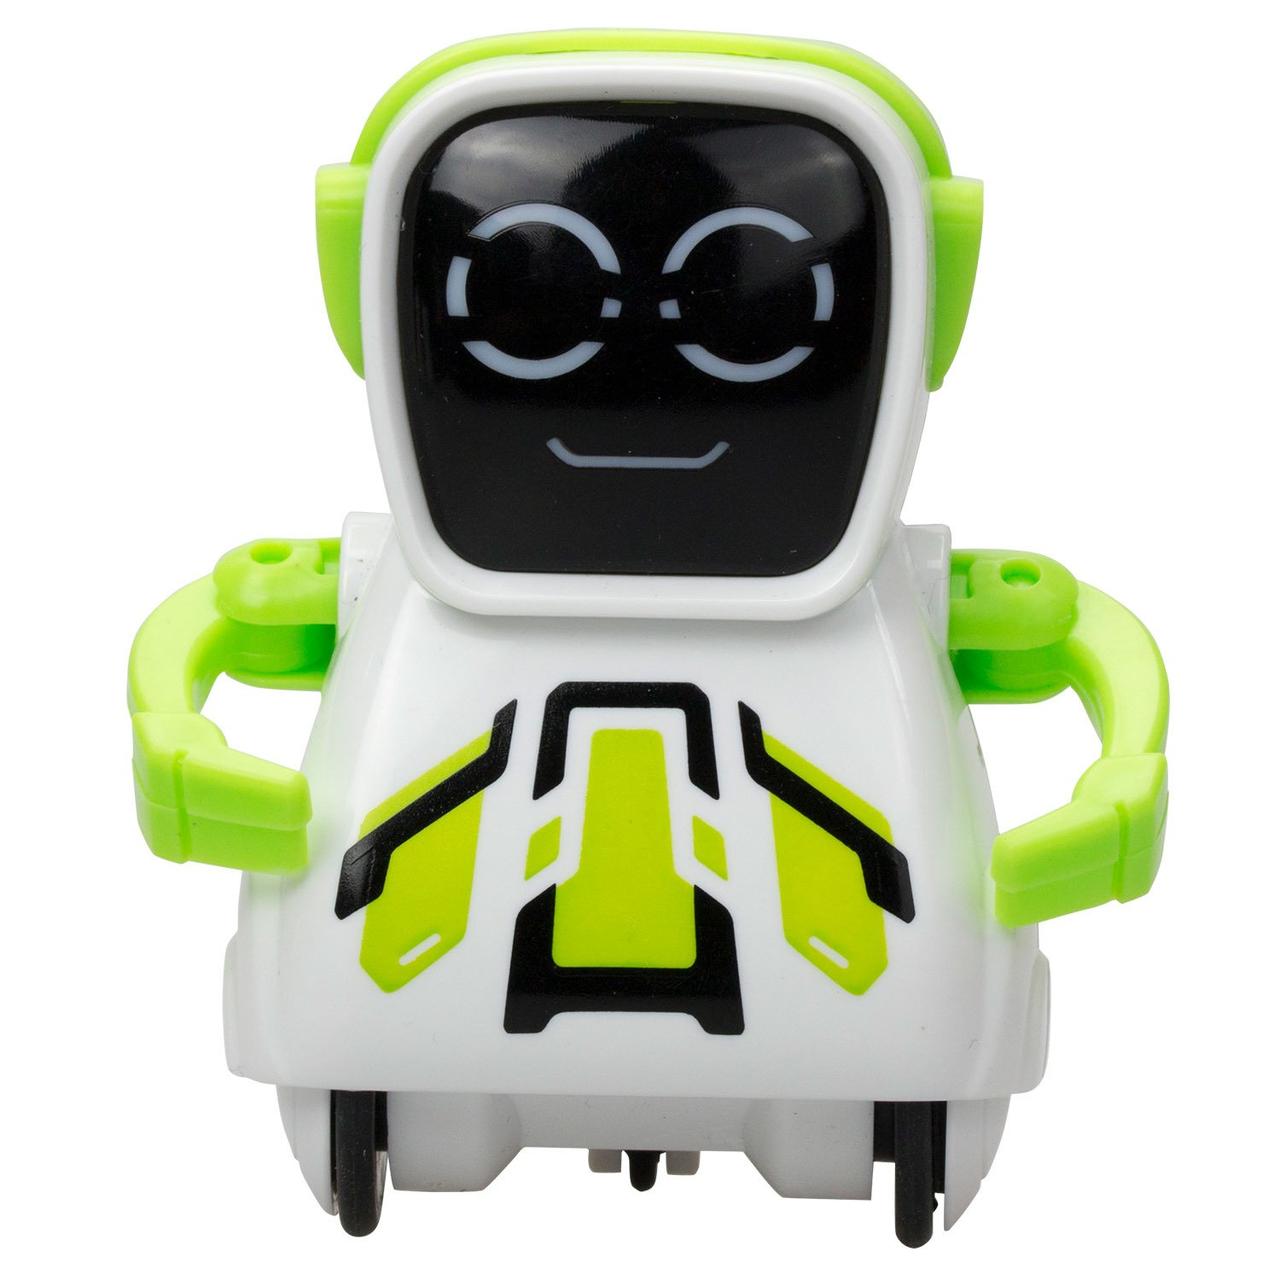 Silverlit Робот Покибот (Pokibot) - зеленый